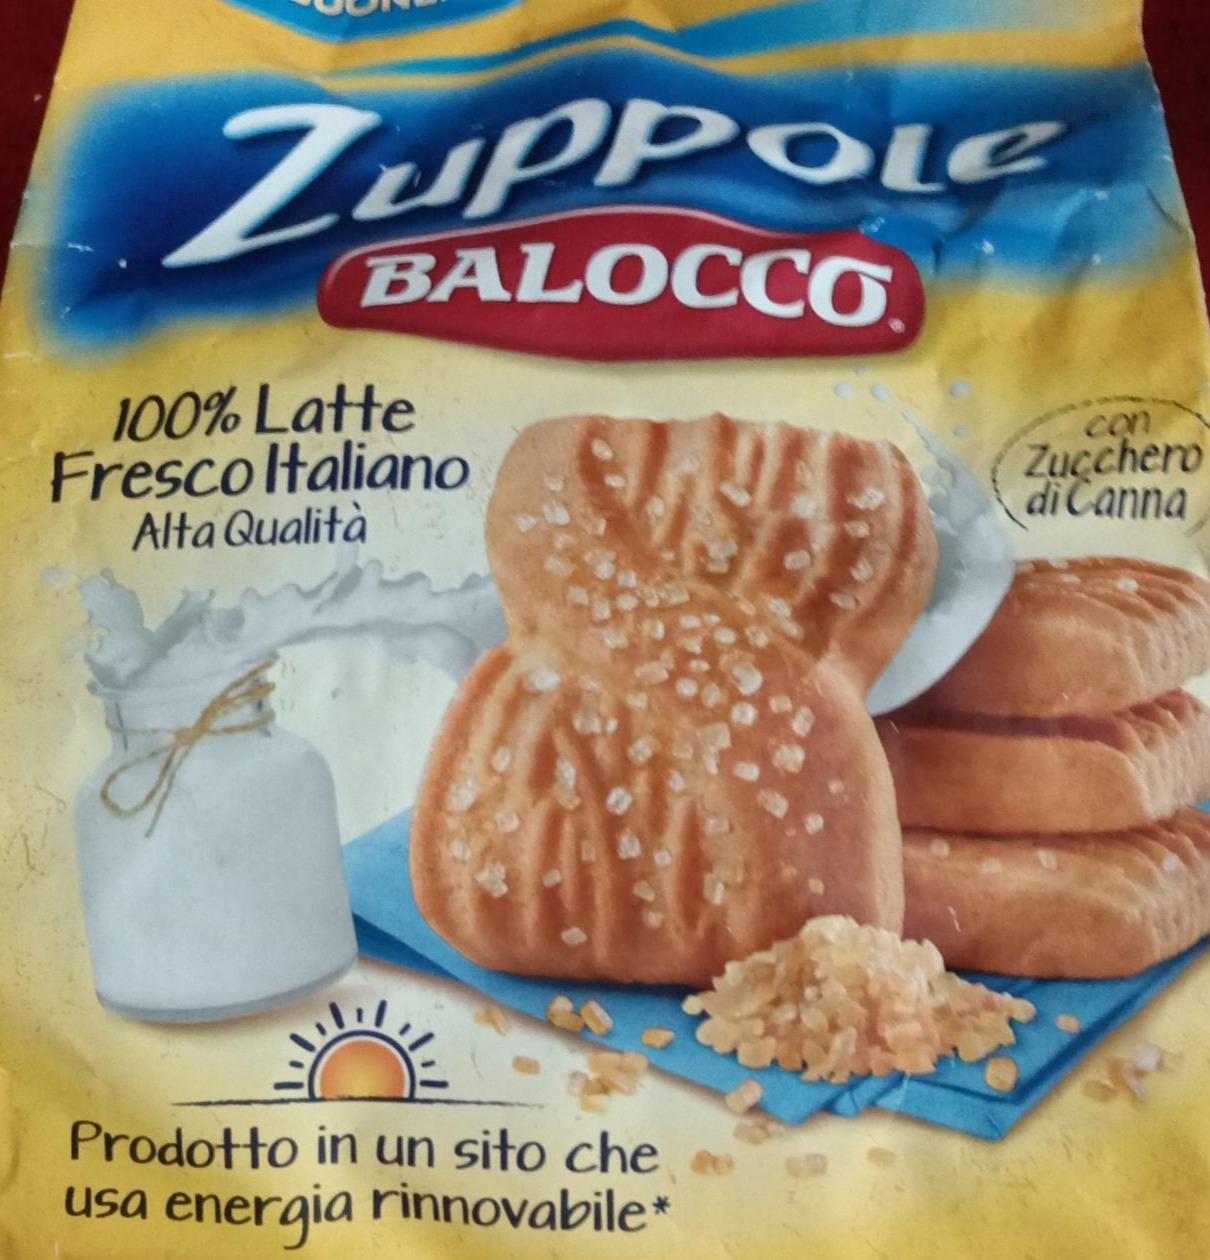 Фото - Пісочне печиво Zuppole Balocco